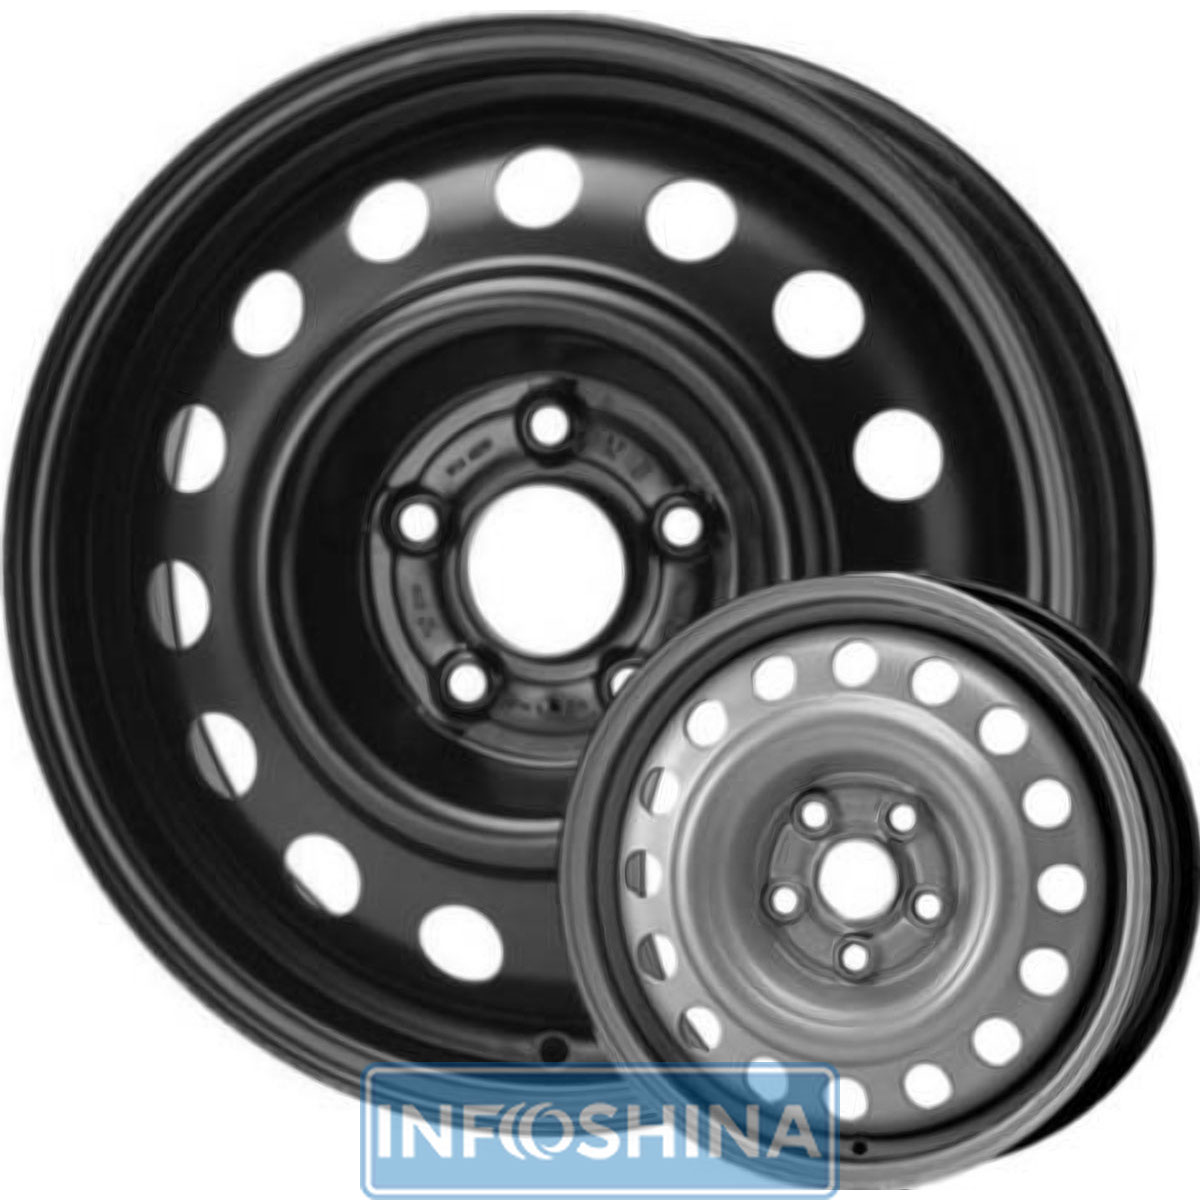 Купить диски Steel Wheels YA-521 B R14 W5.5 PCD4x114.3 ET44 DIA56.6